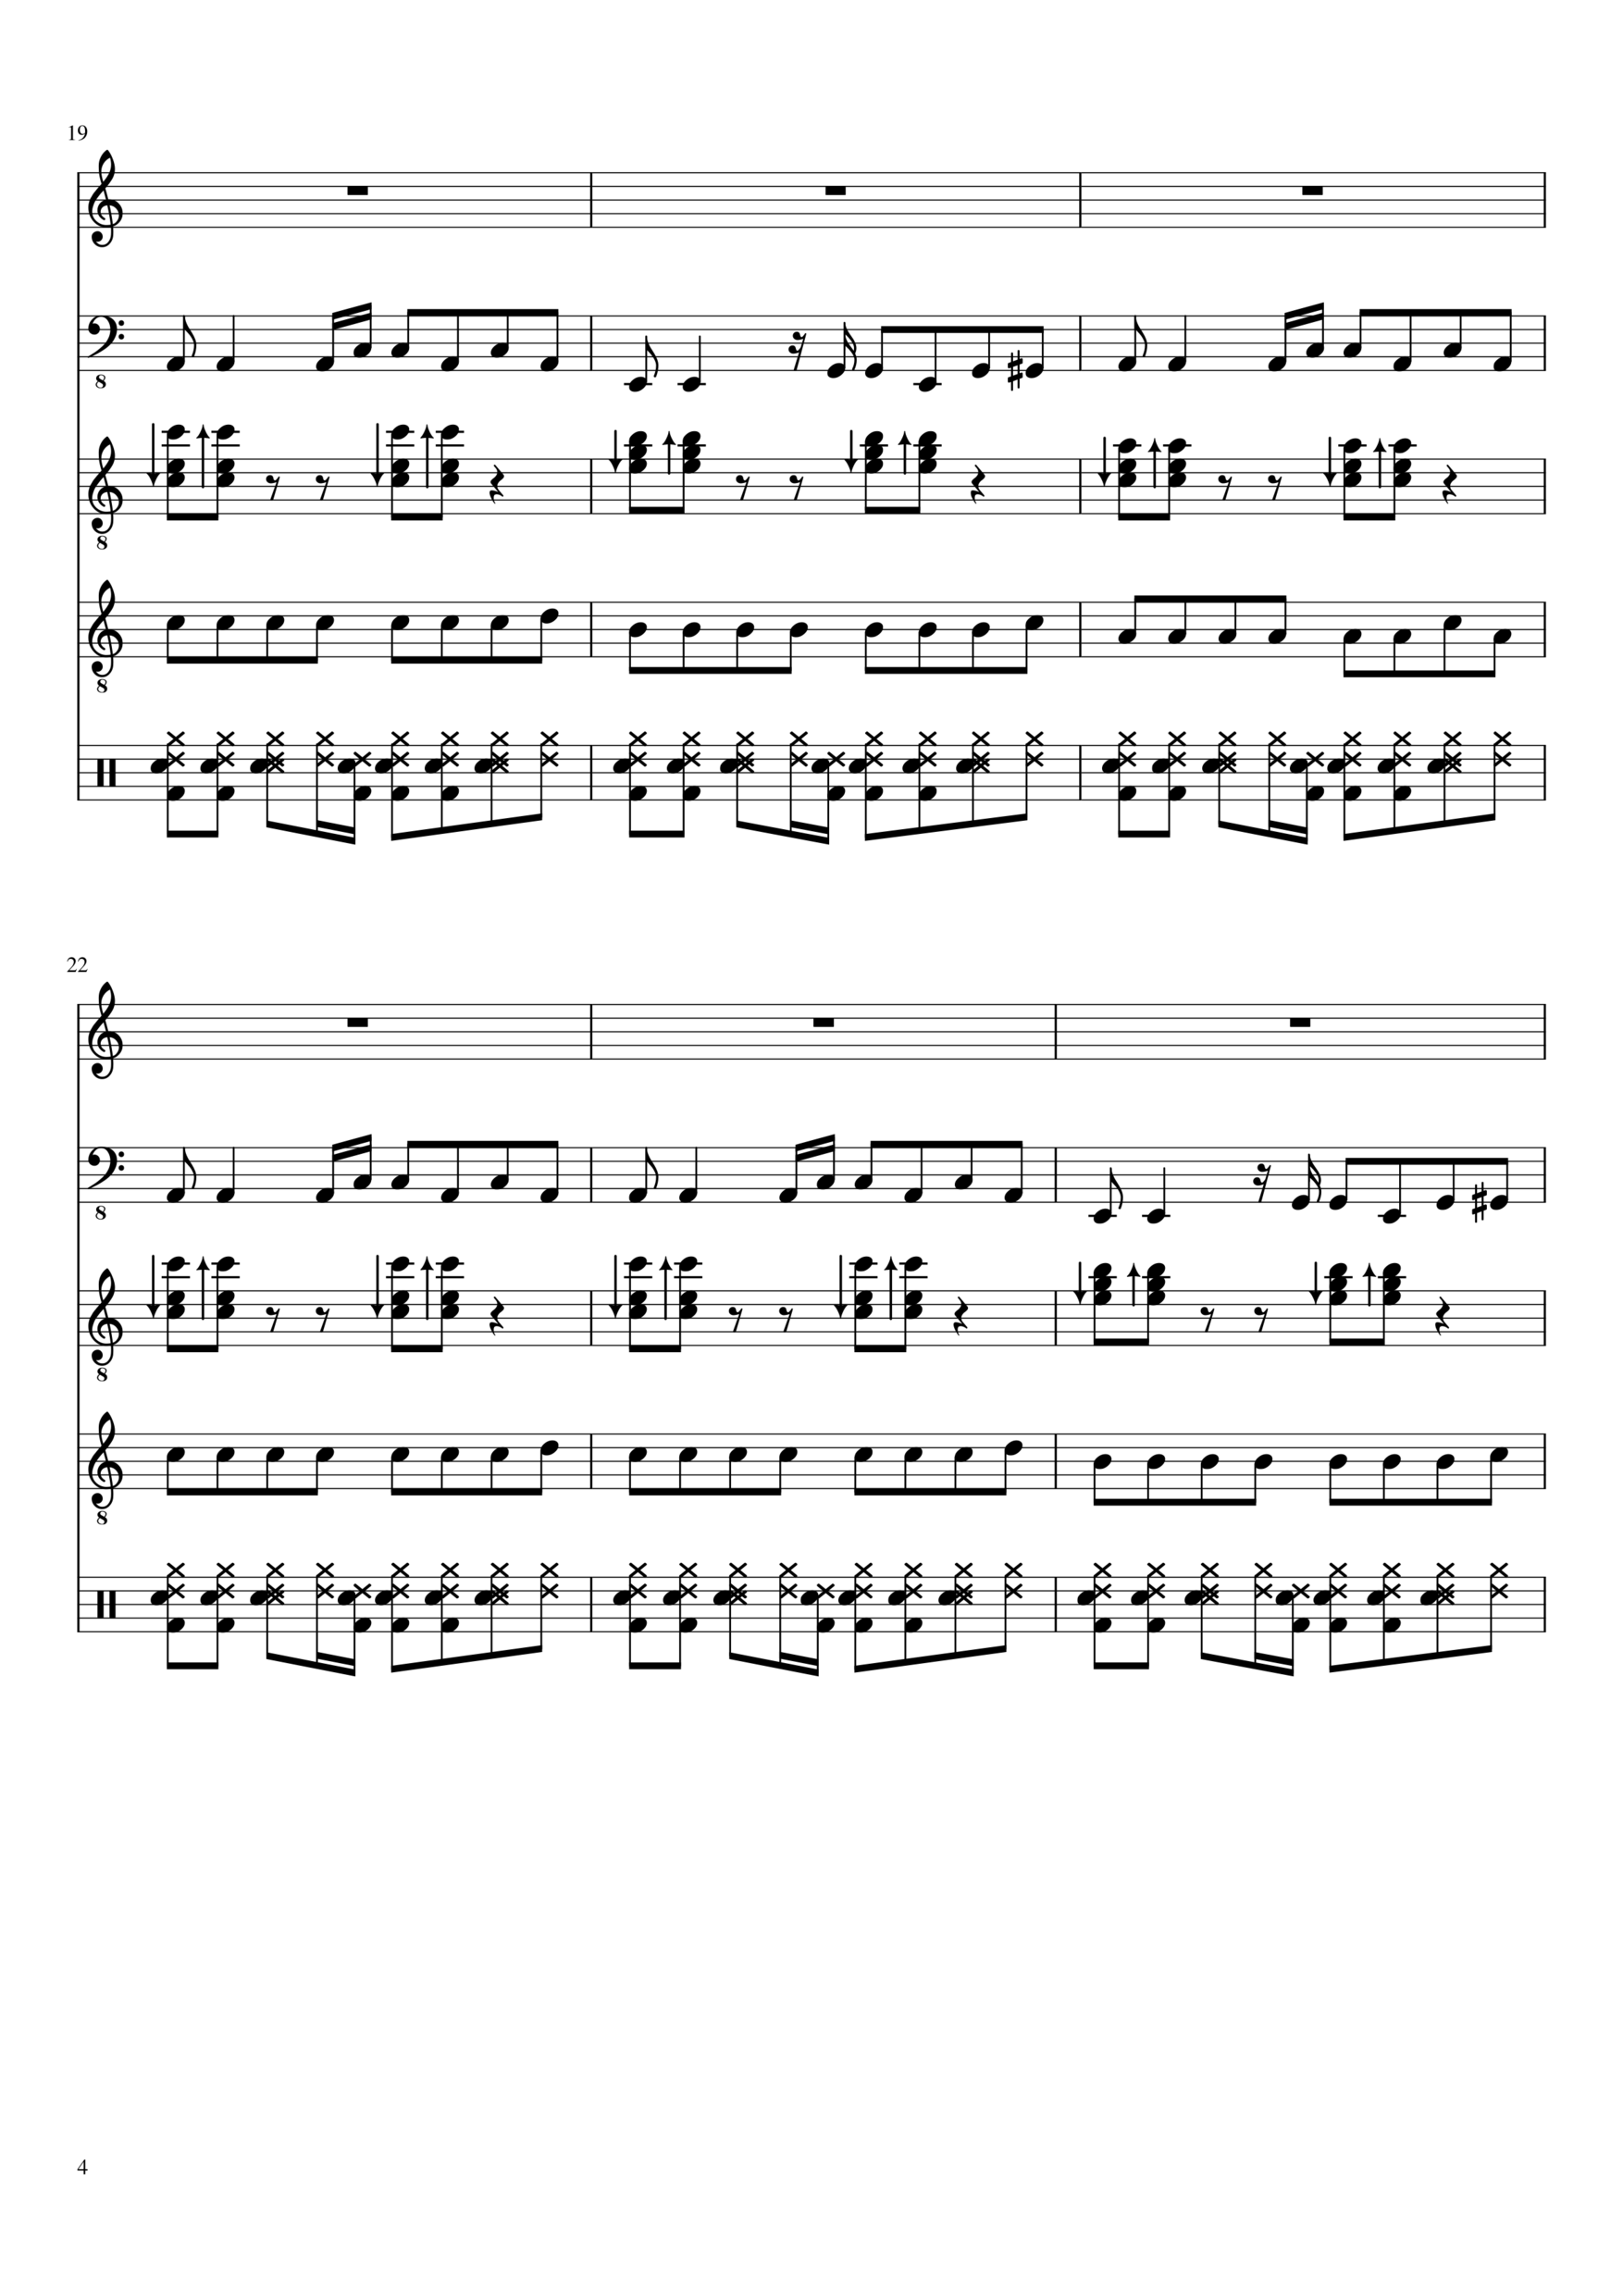 Vechnaya lyubov slide, Image 4